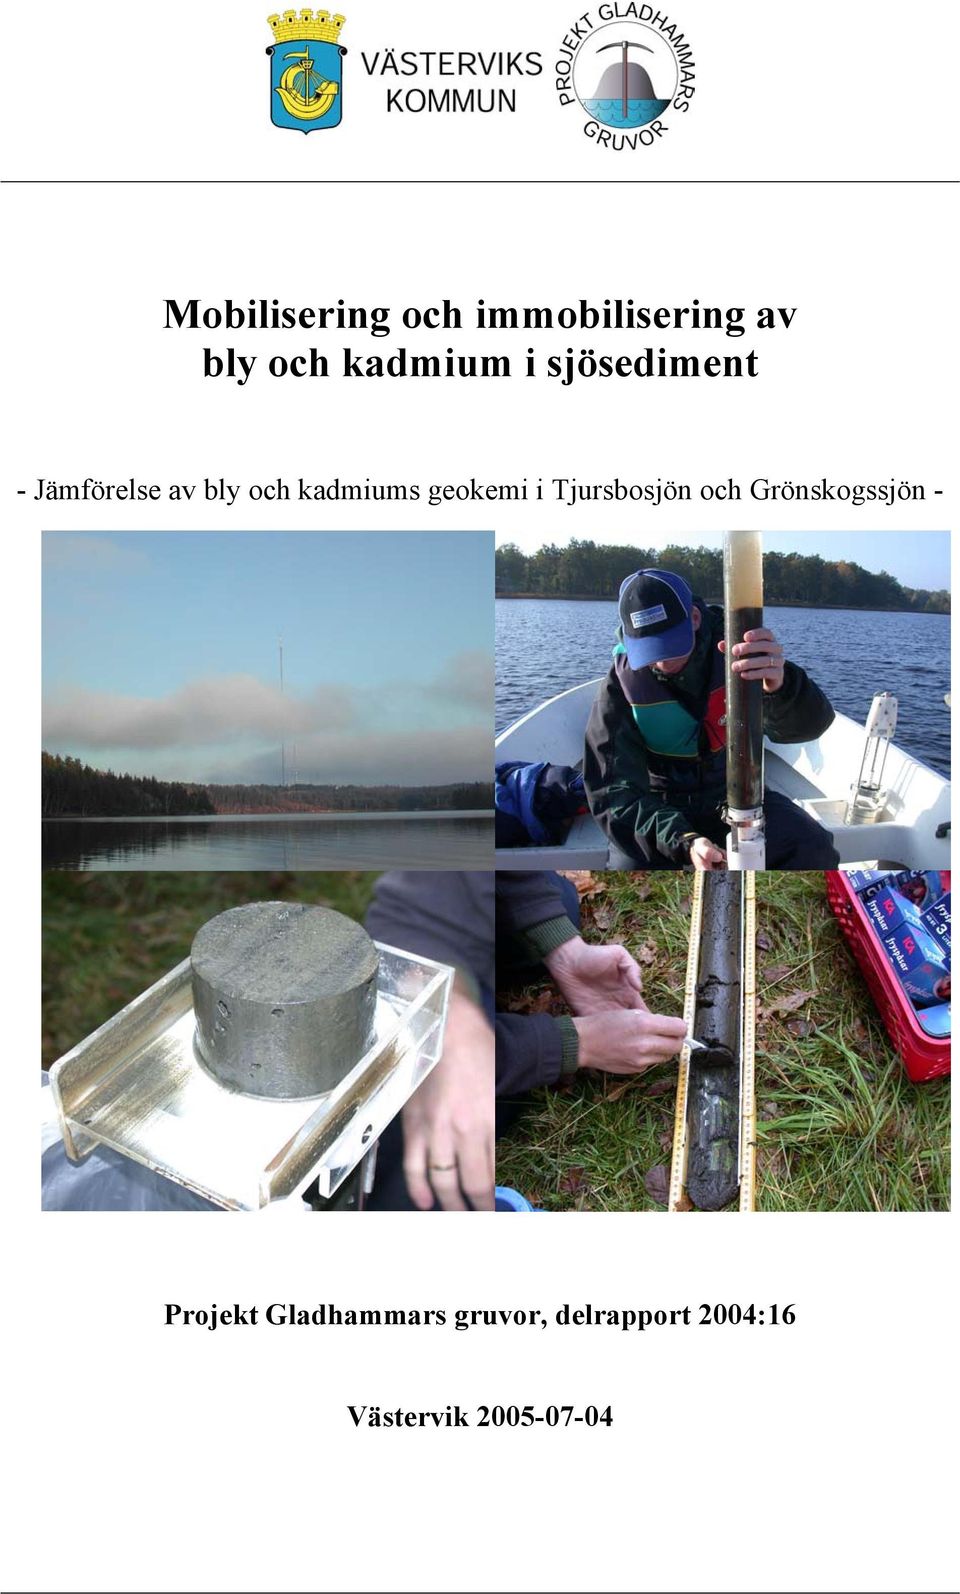 kadmiums geokemi i Tjursbosjön och Grönskogssjön